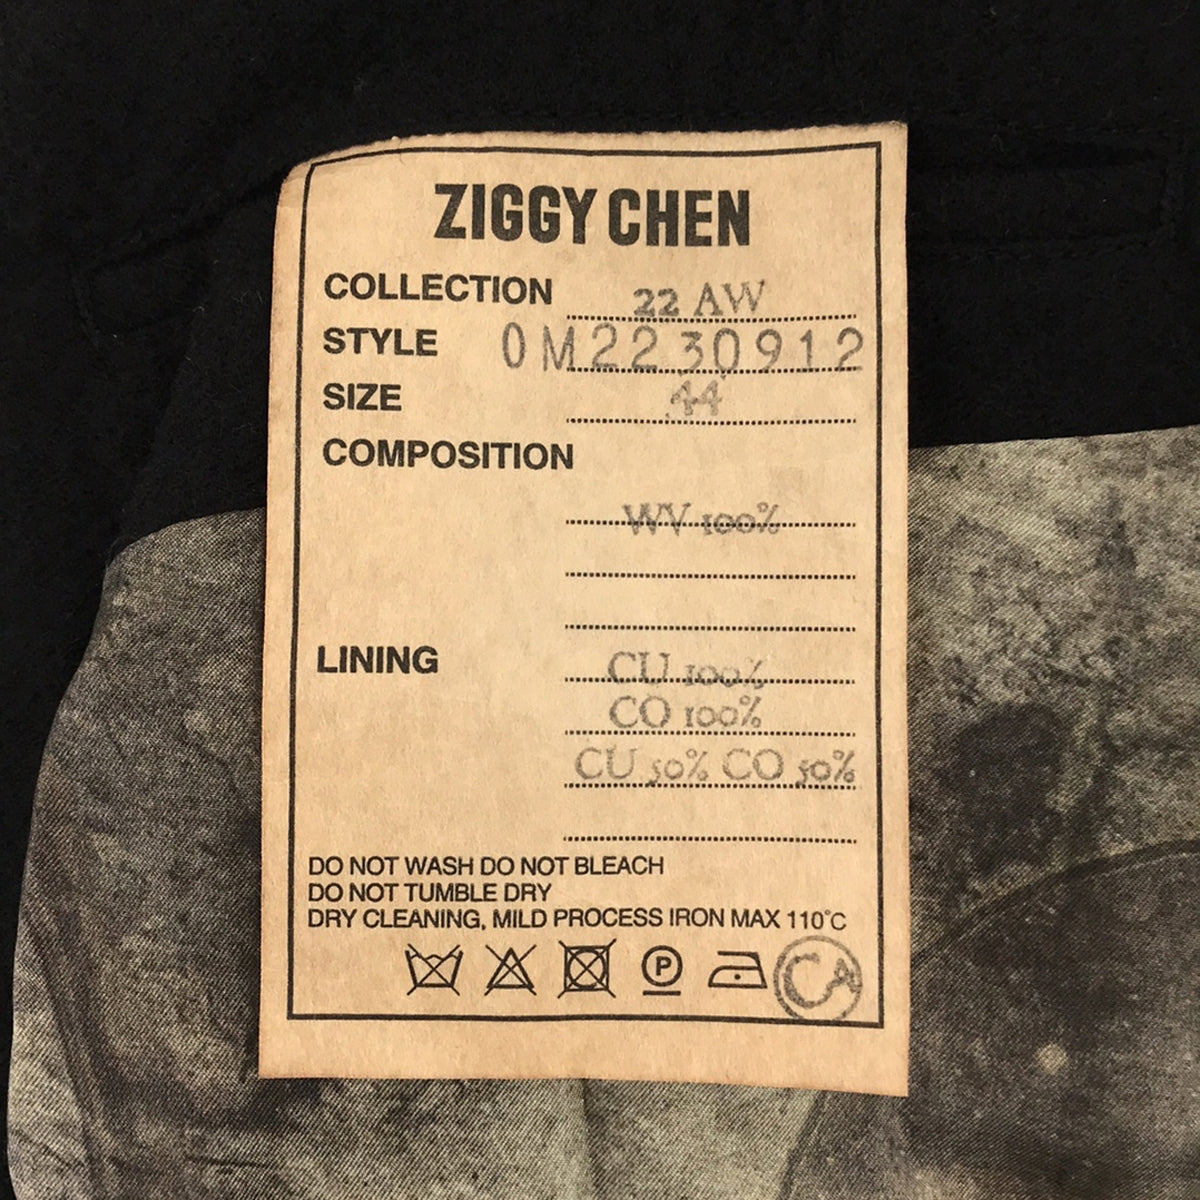 ziggy chen / ジギーチェン | アシンメトリック 2ボタンブレザー ジャケット | 44 | メンズ